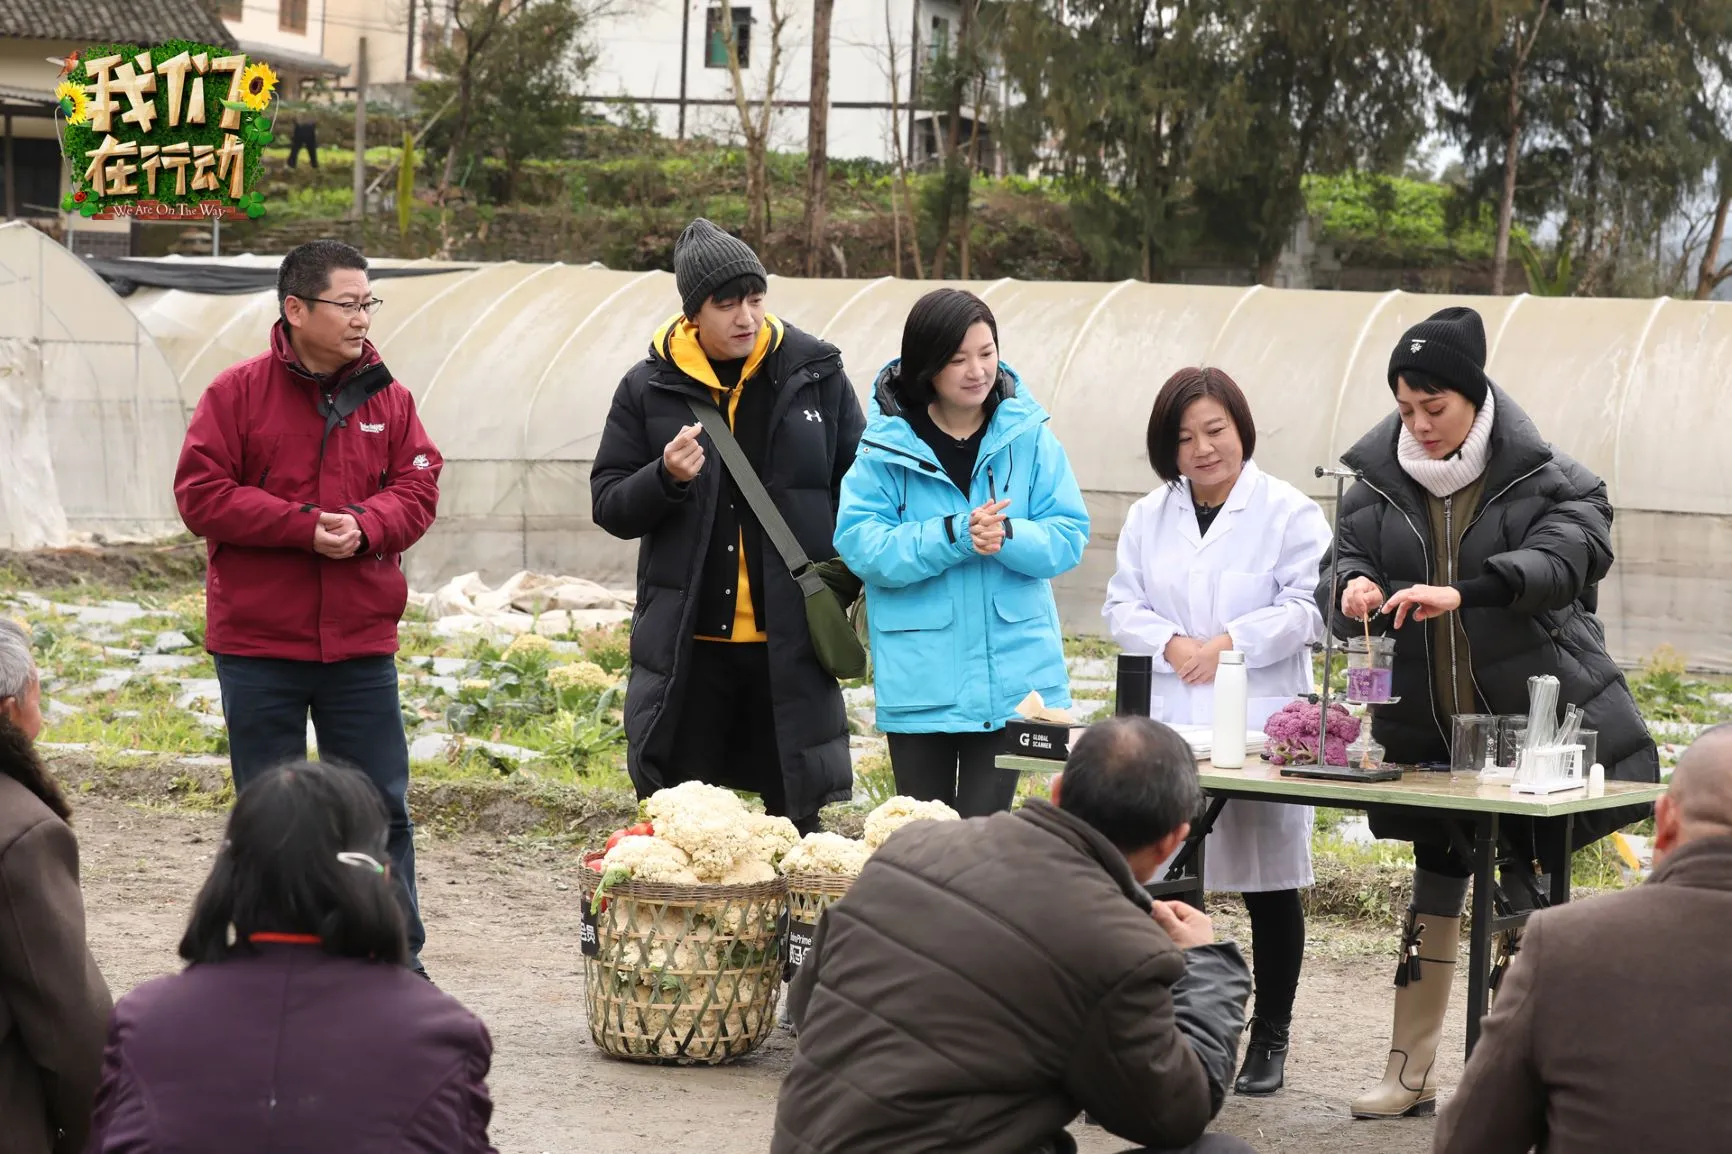 公益大使与植物专家一起为村民安利新型蔬菜优势.jpg